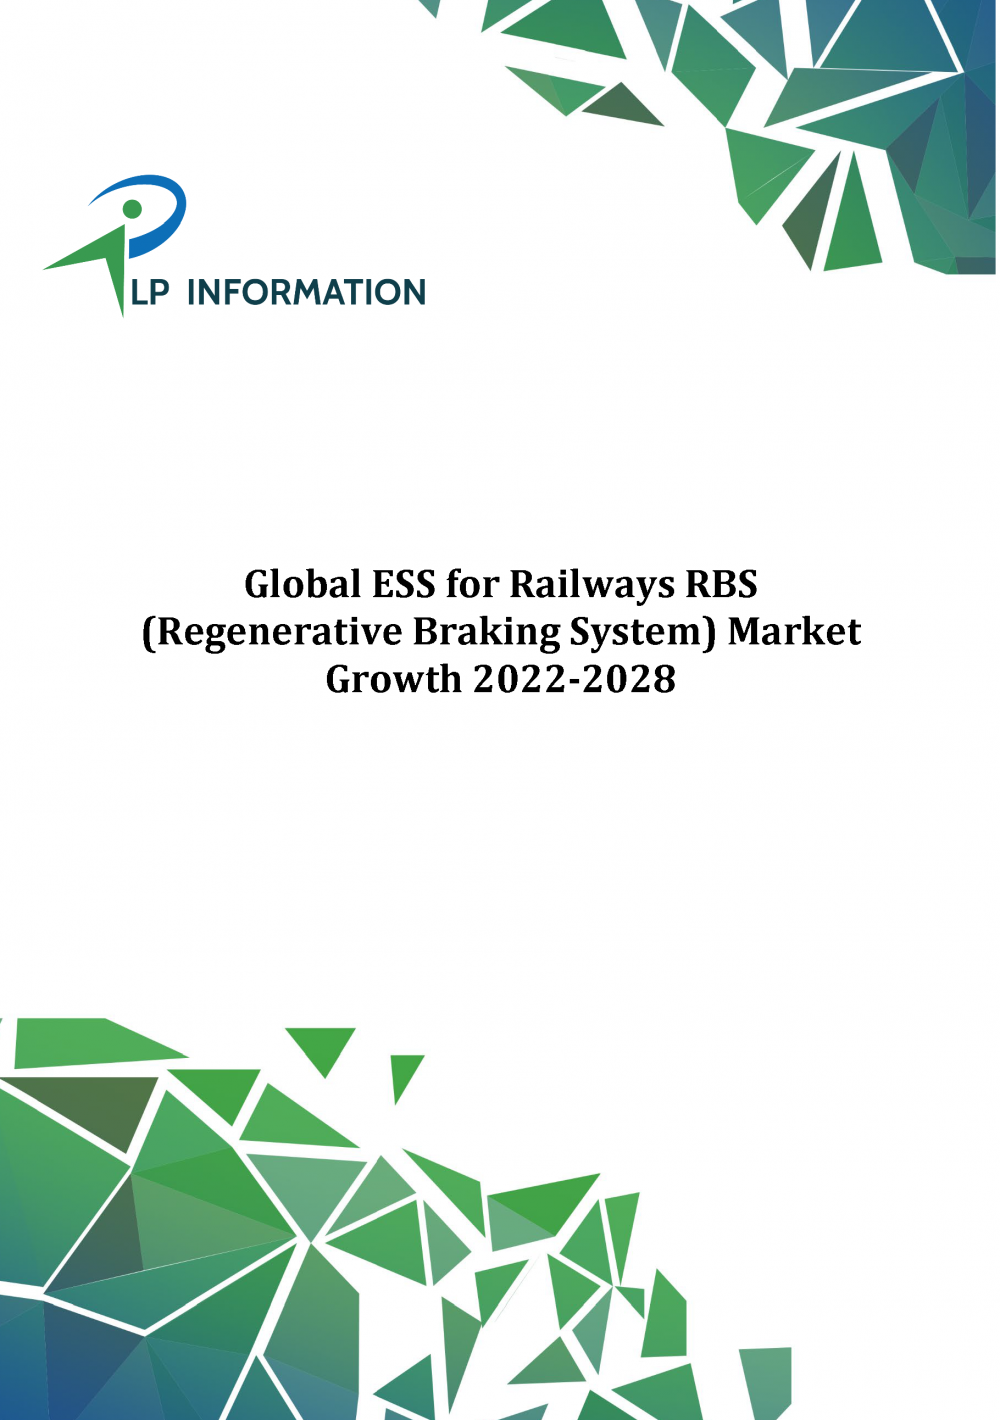 Global ESS for Railways RBS Market Growth 2022-2028